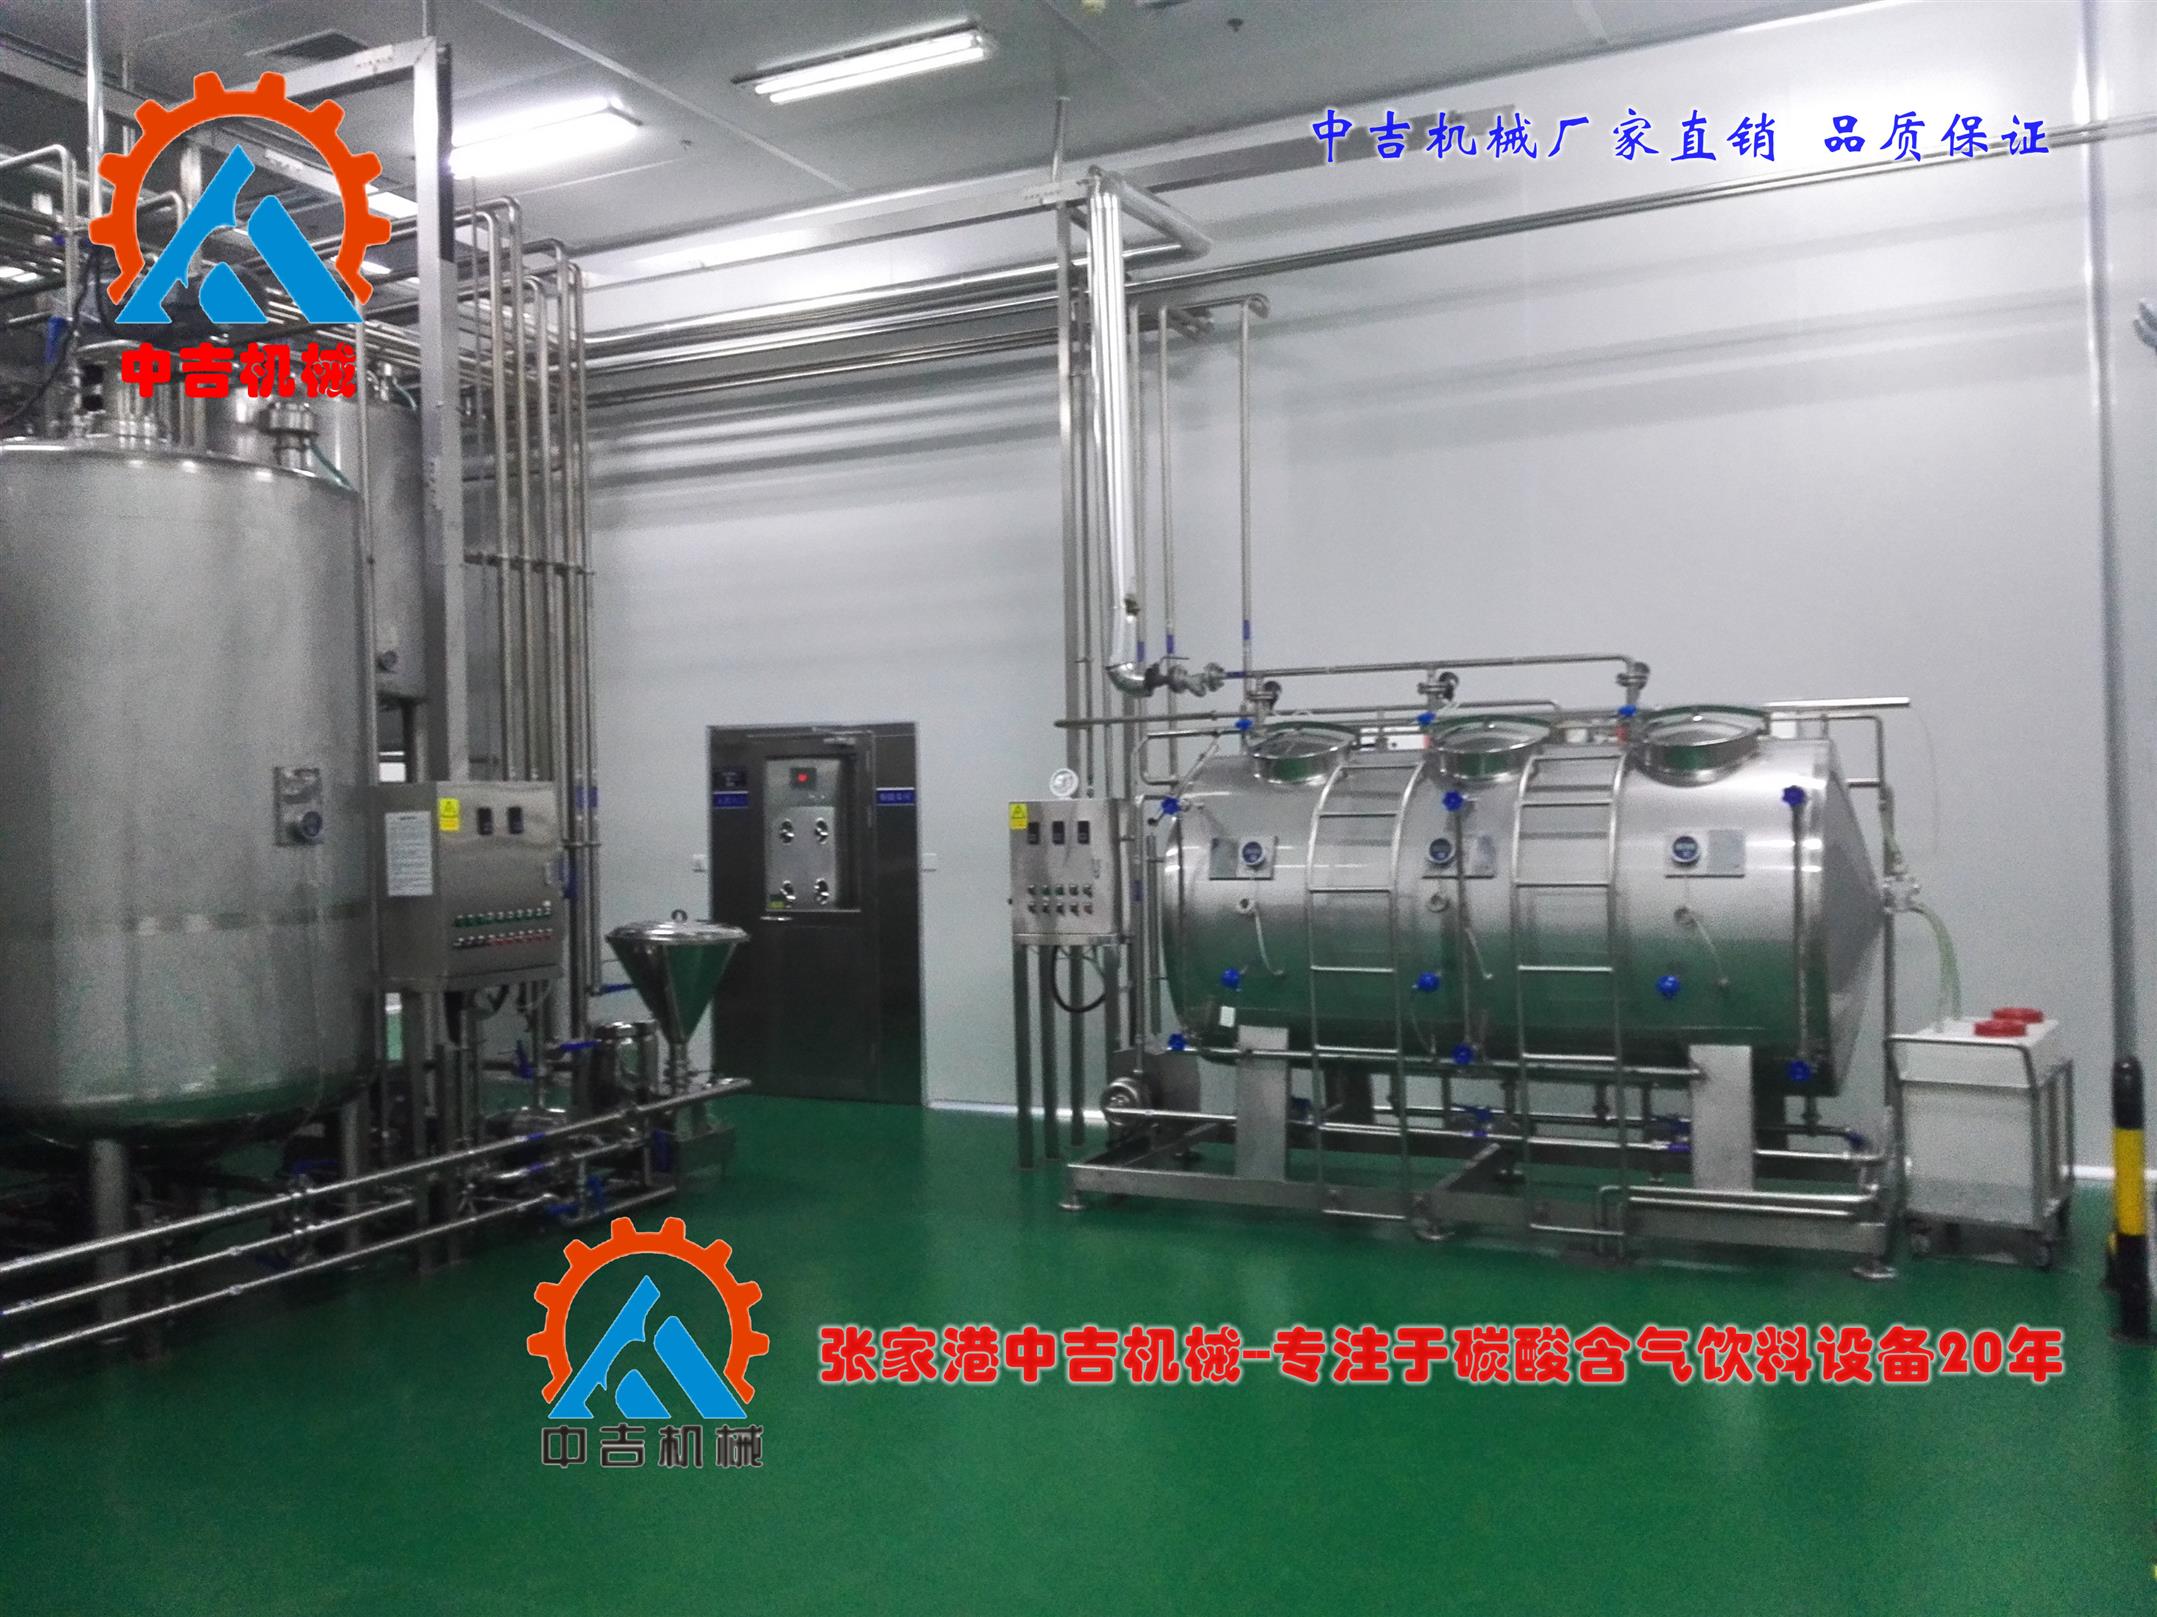 张家港碳酸饮料生产线厂家厂家-工艺流程